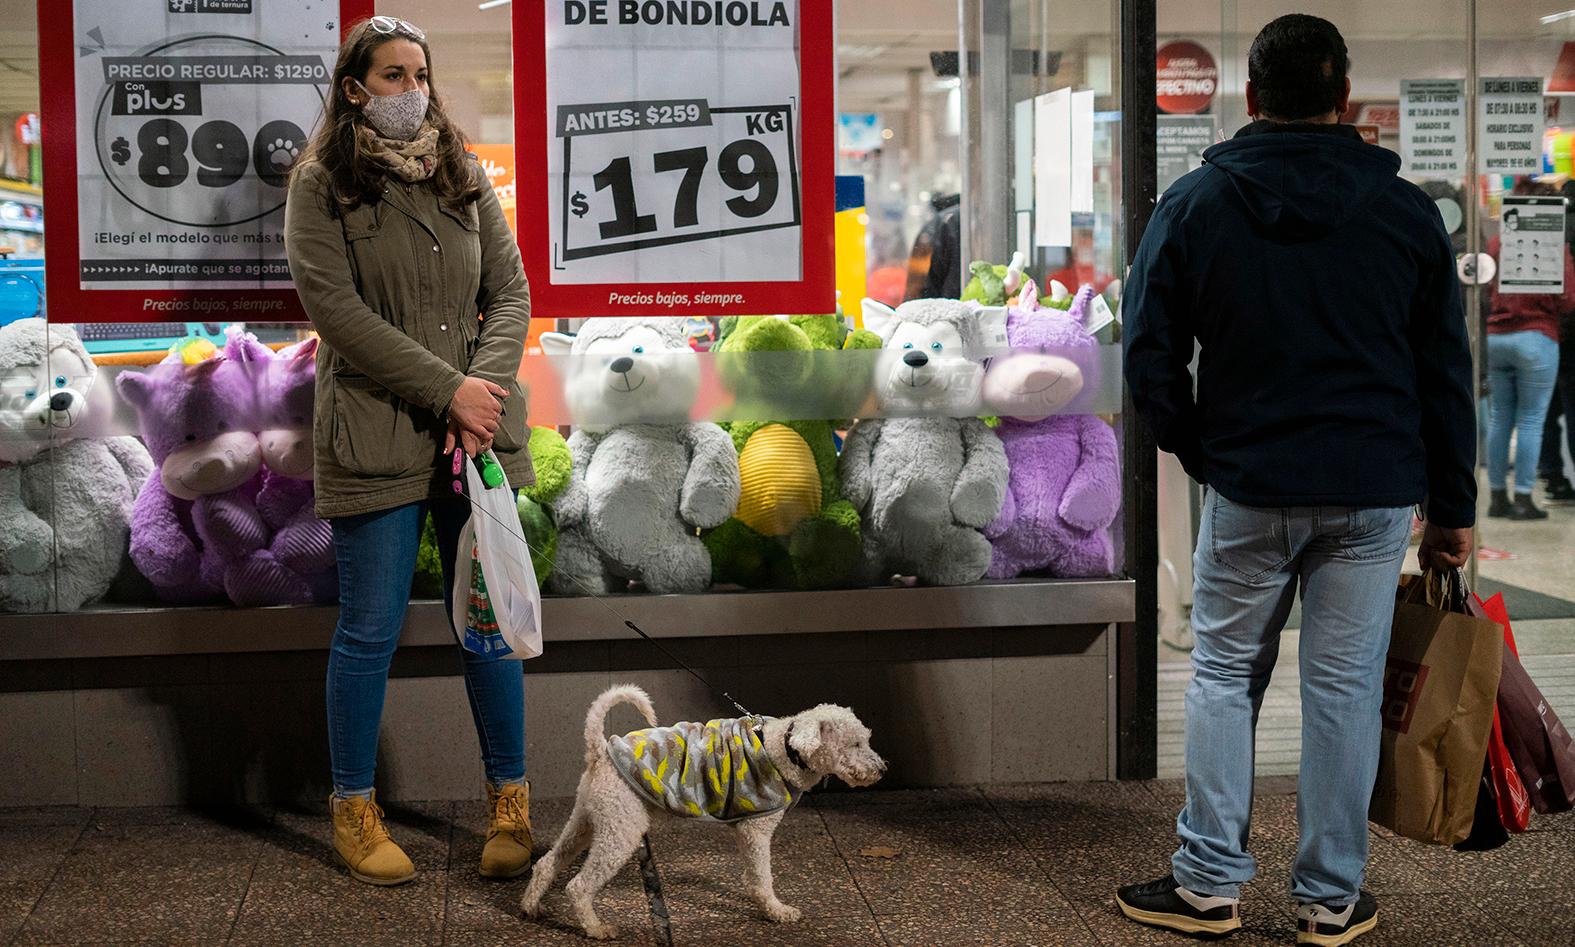 I Uruguays huvudstad Montevideo respekterar invånarna reglerna för att undvika att smittas.